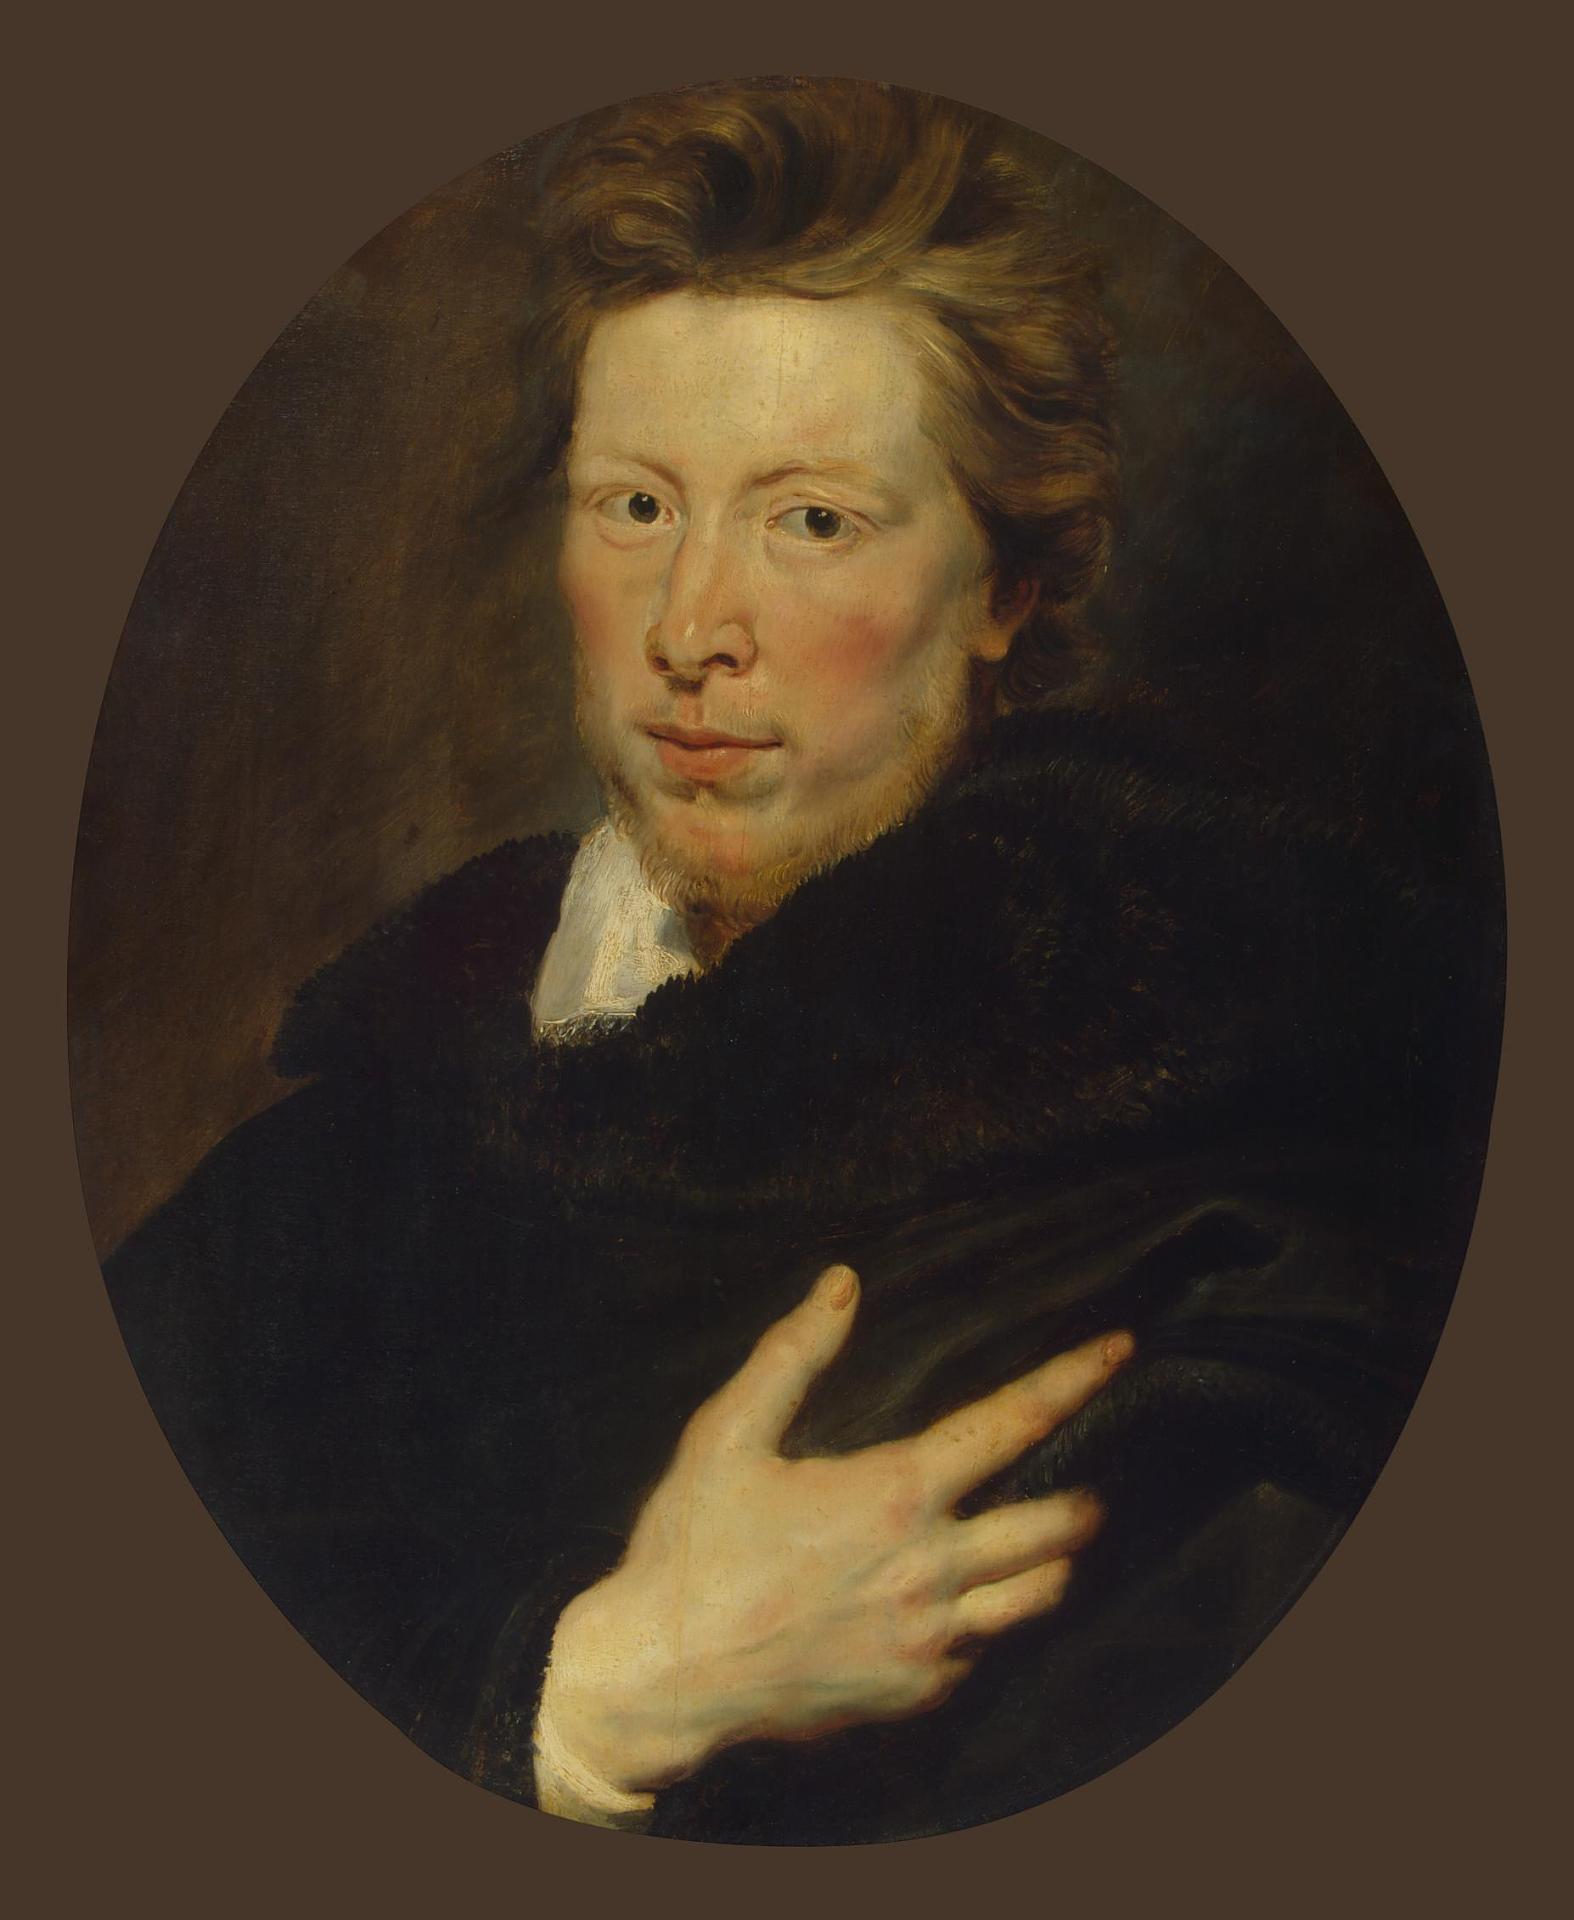 Питер Пауль (Пьетро Пауло) Рубенс. "Портрет молодого человека (Джорджа Гейджа)". Около 1616-1617. Эрмитаж, Санкт-Петербург.